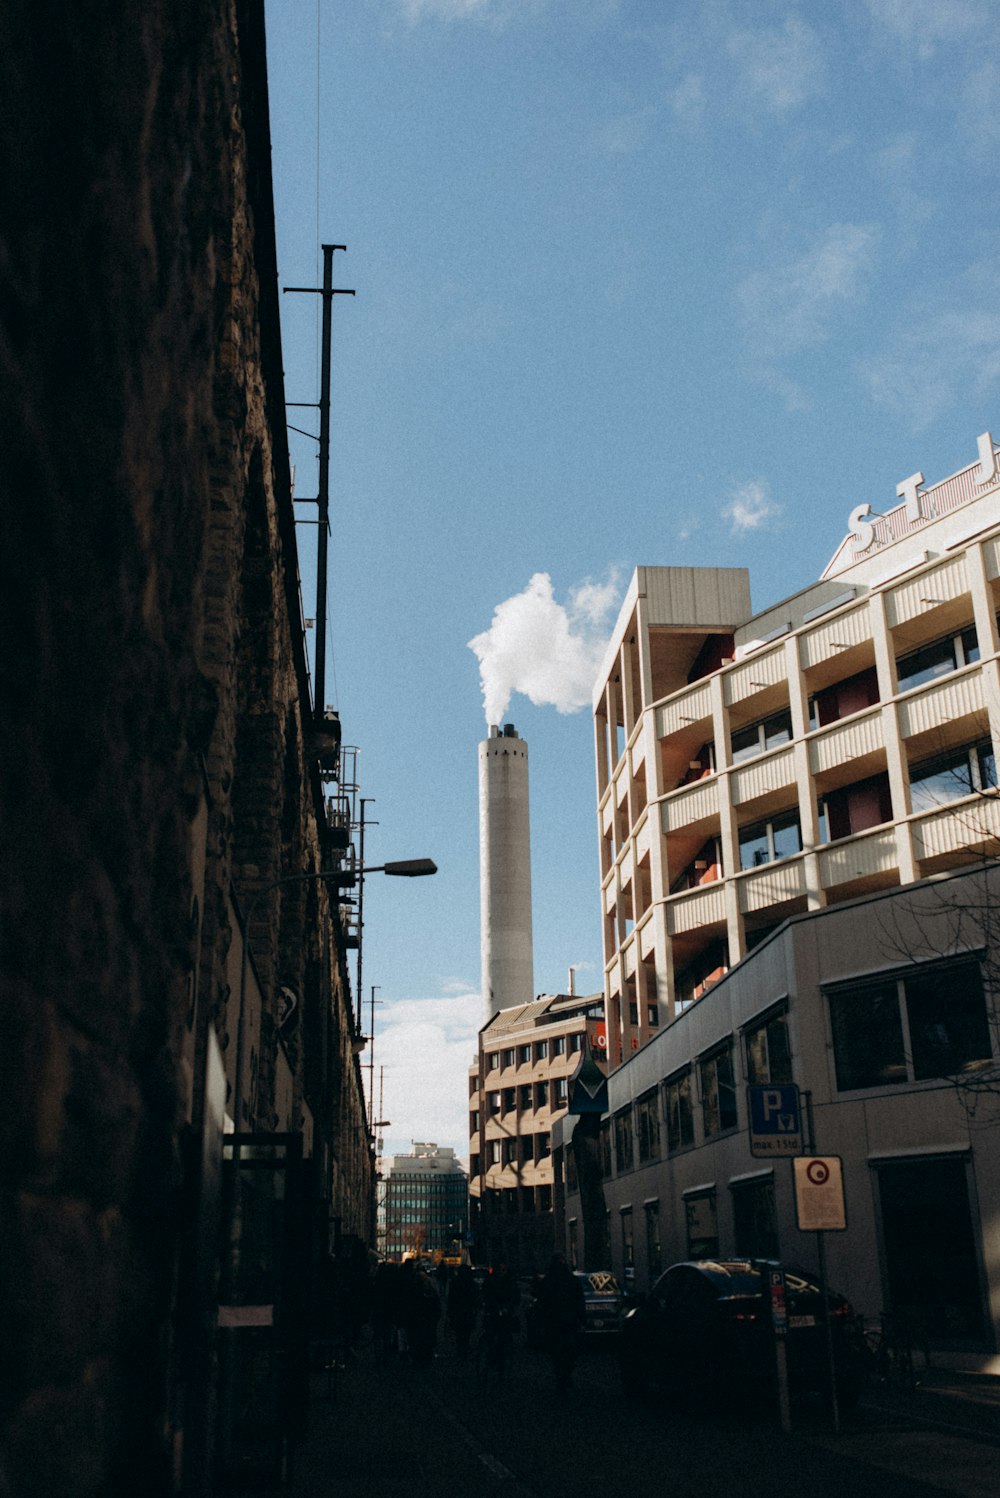 Una calle de la ciudad con edificios altos y una chimenea en la distancia